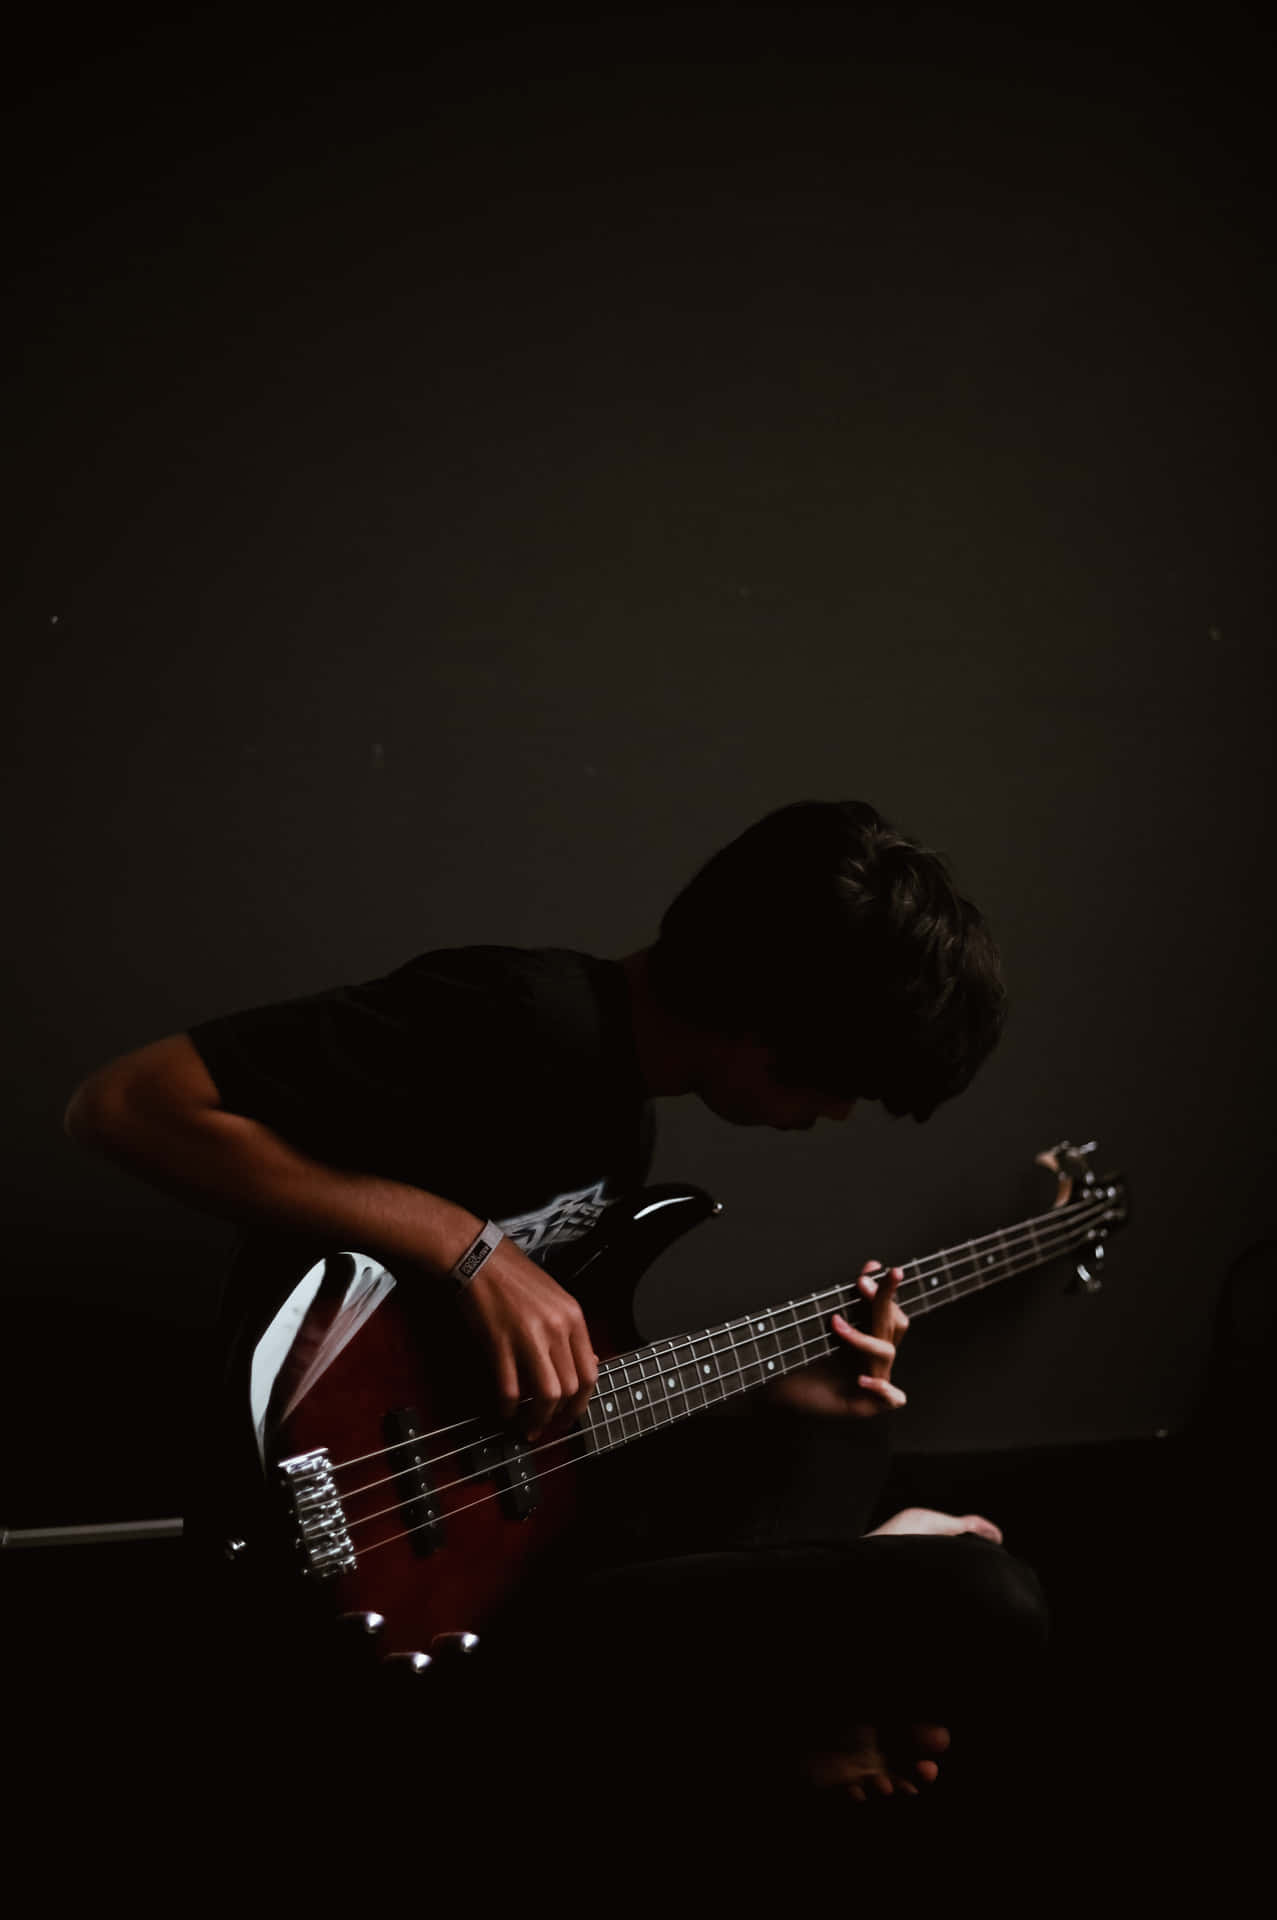 Bass Guitar Play Boy Dark Mobile Wallpaper